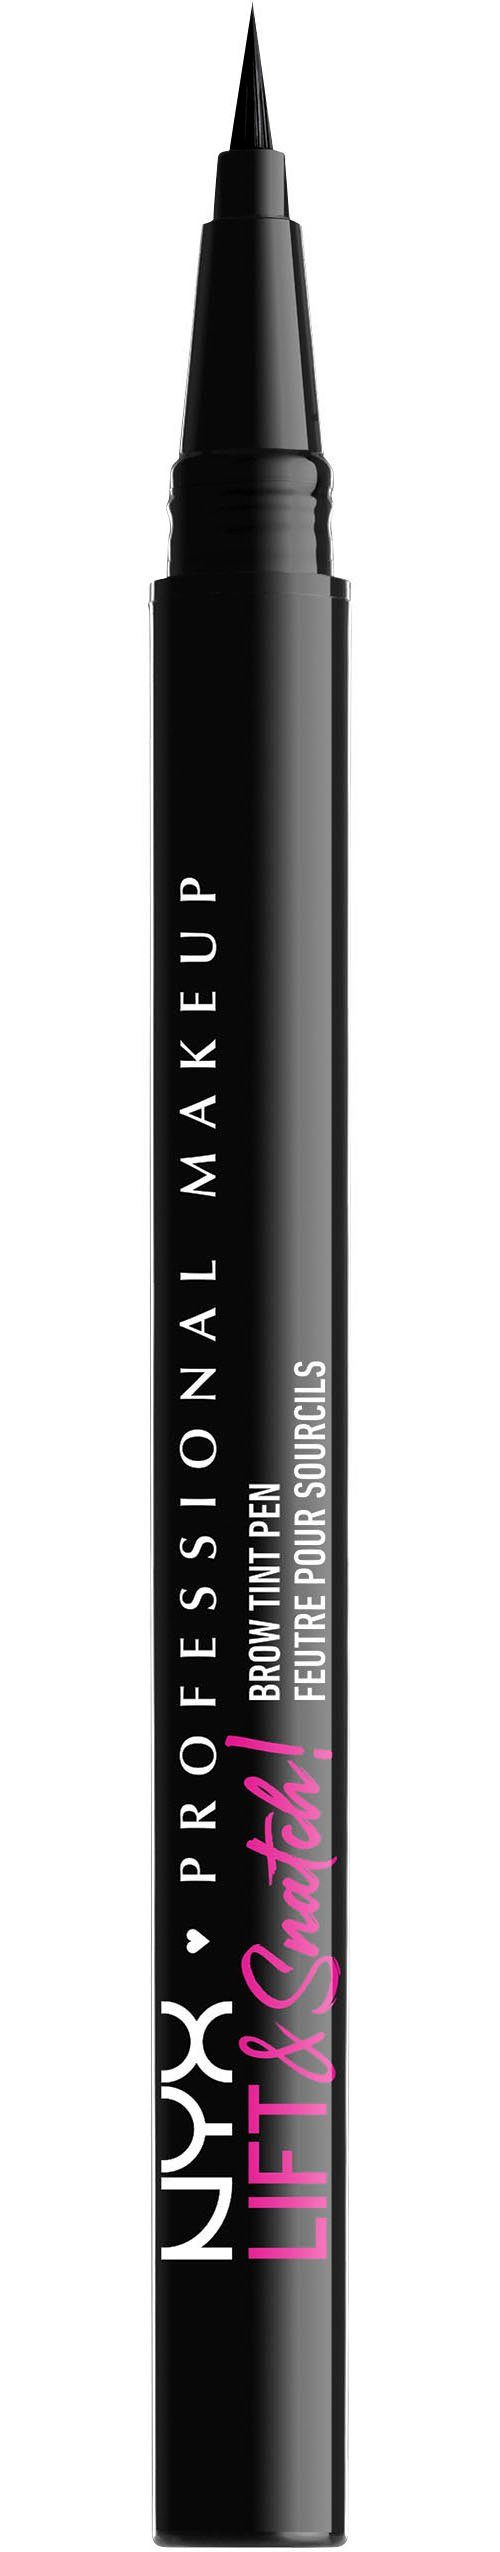 NYX Augenbrauen-Stift Professional Makeup Lift & Snatch Brow Tint Pen black | Augenbrauen